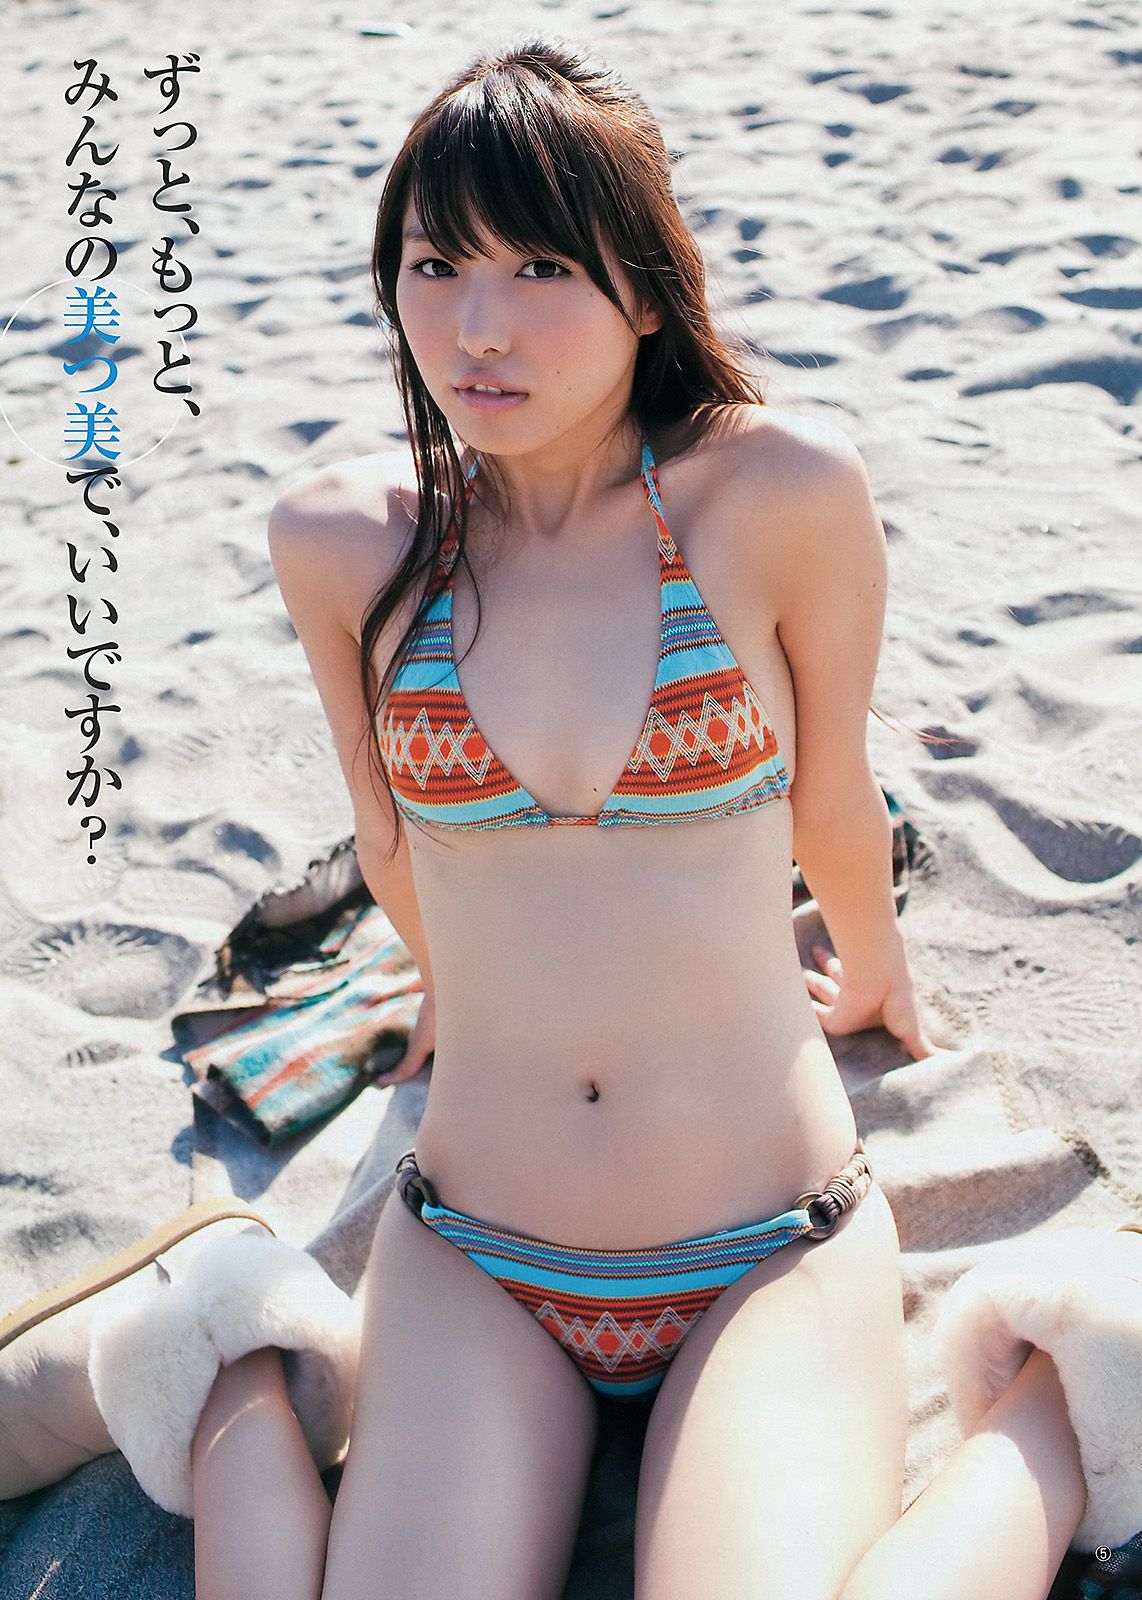 柏木由纪 広村美つ美 [Weekly Young Jump] 2011年No.51 写真杂志/(13P)